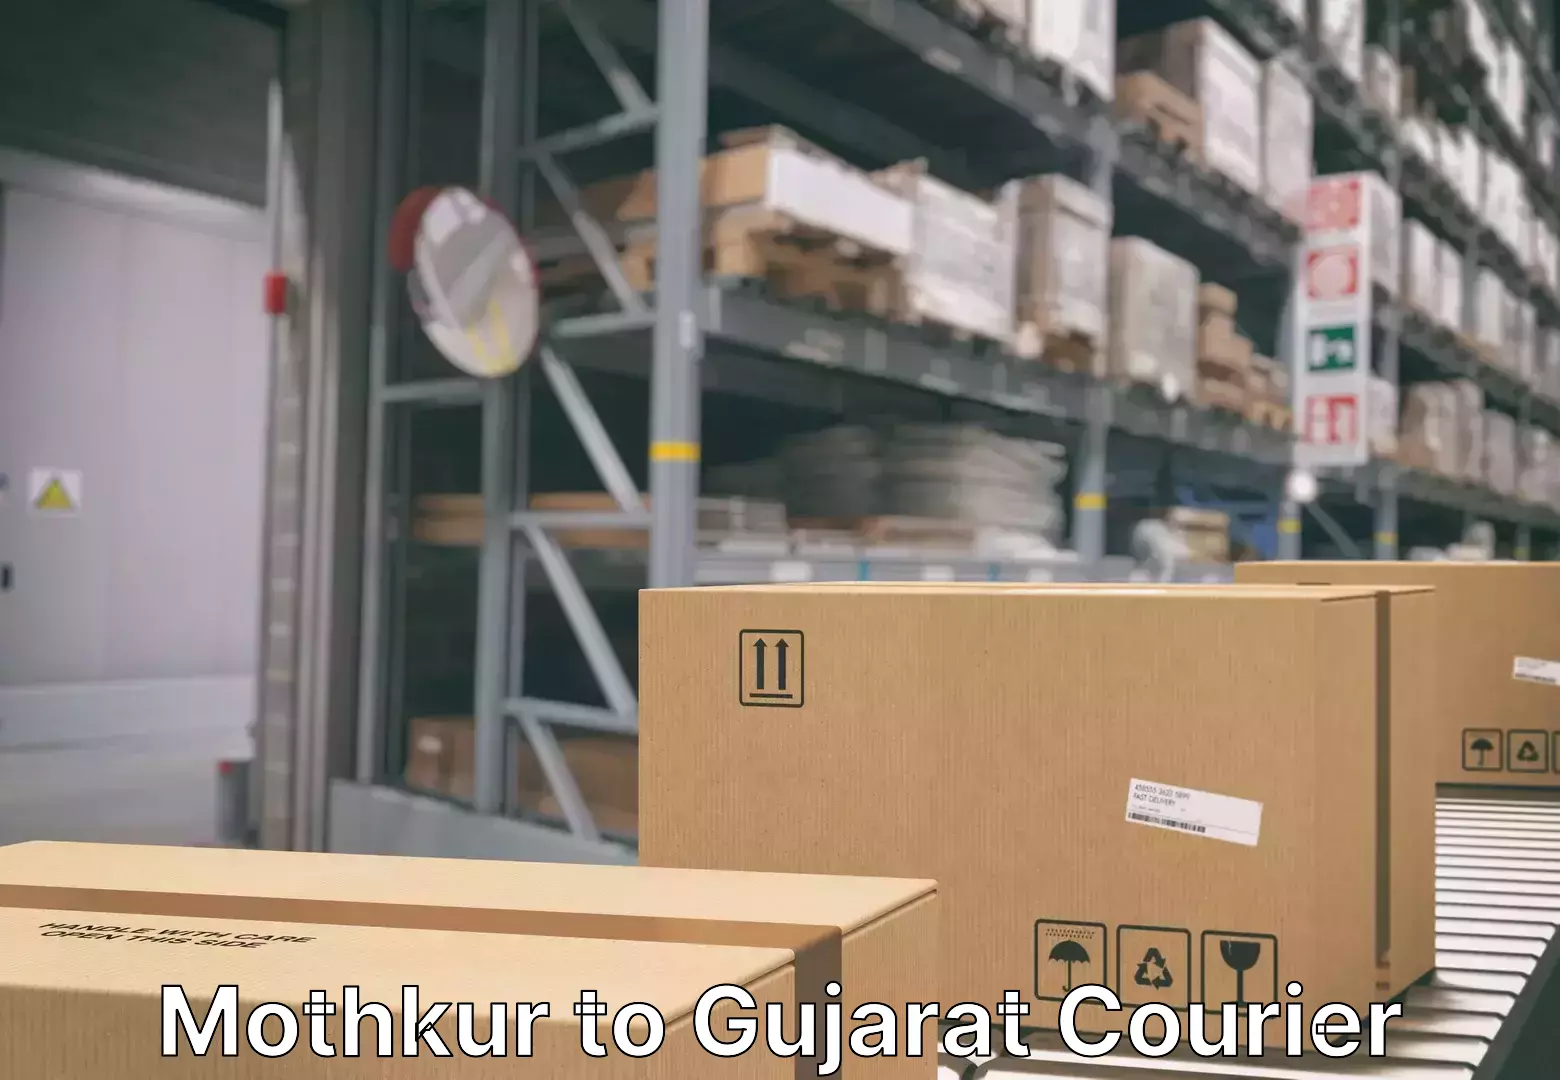 Furniture transport specialists Mothkur to Gujarat